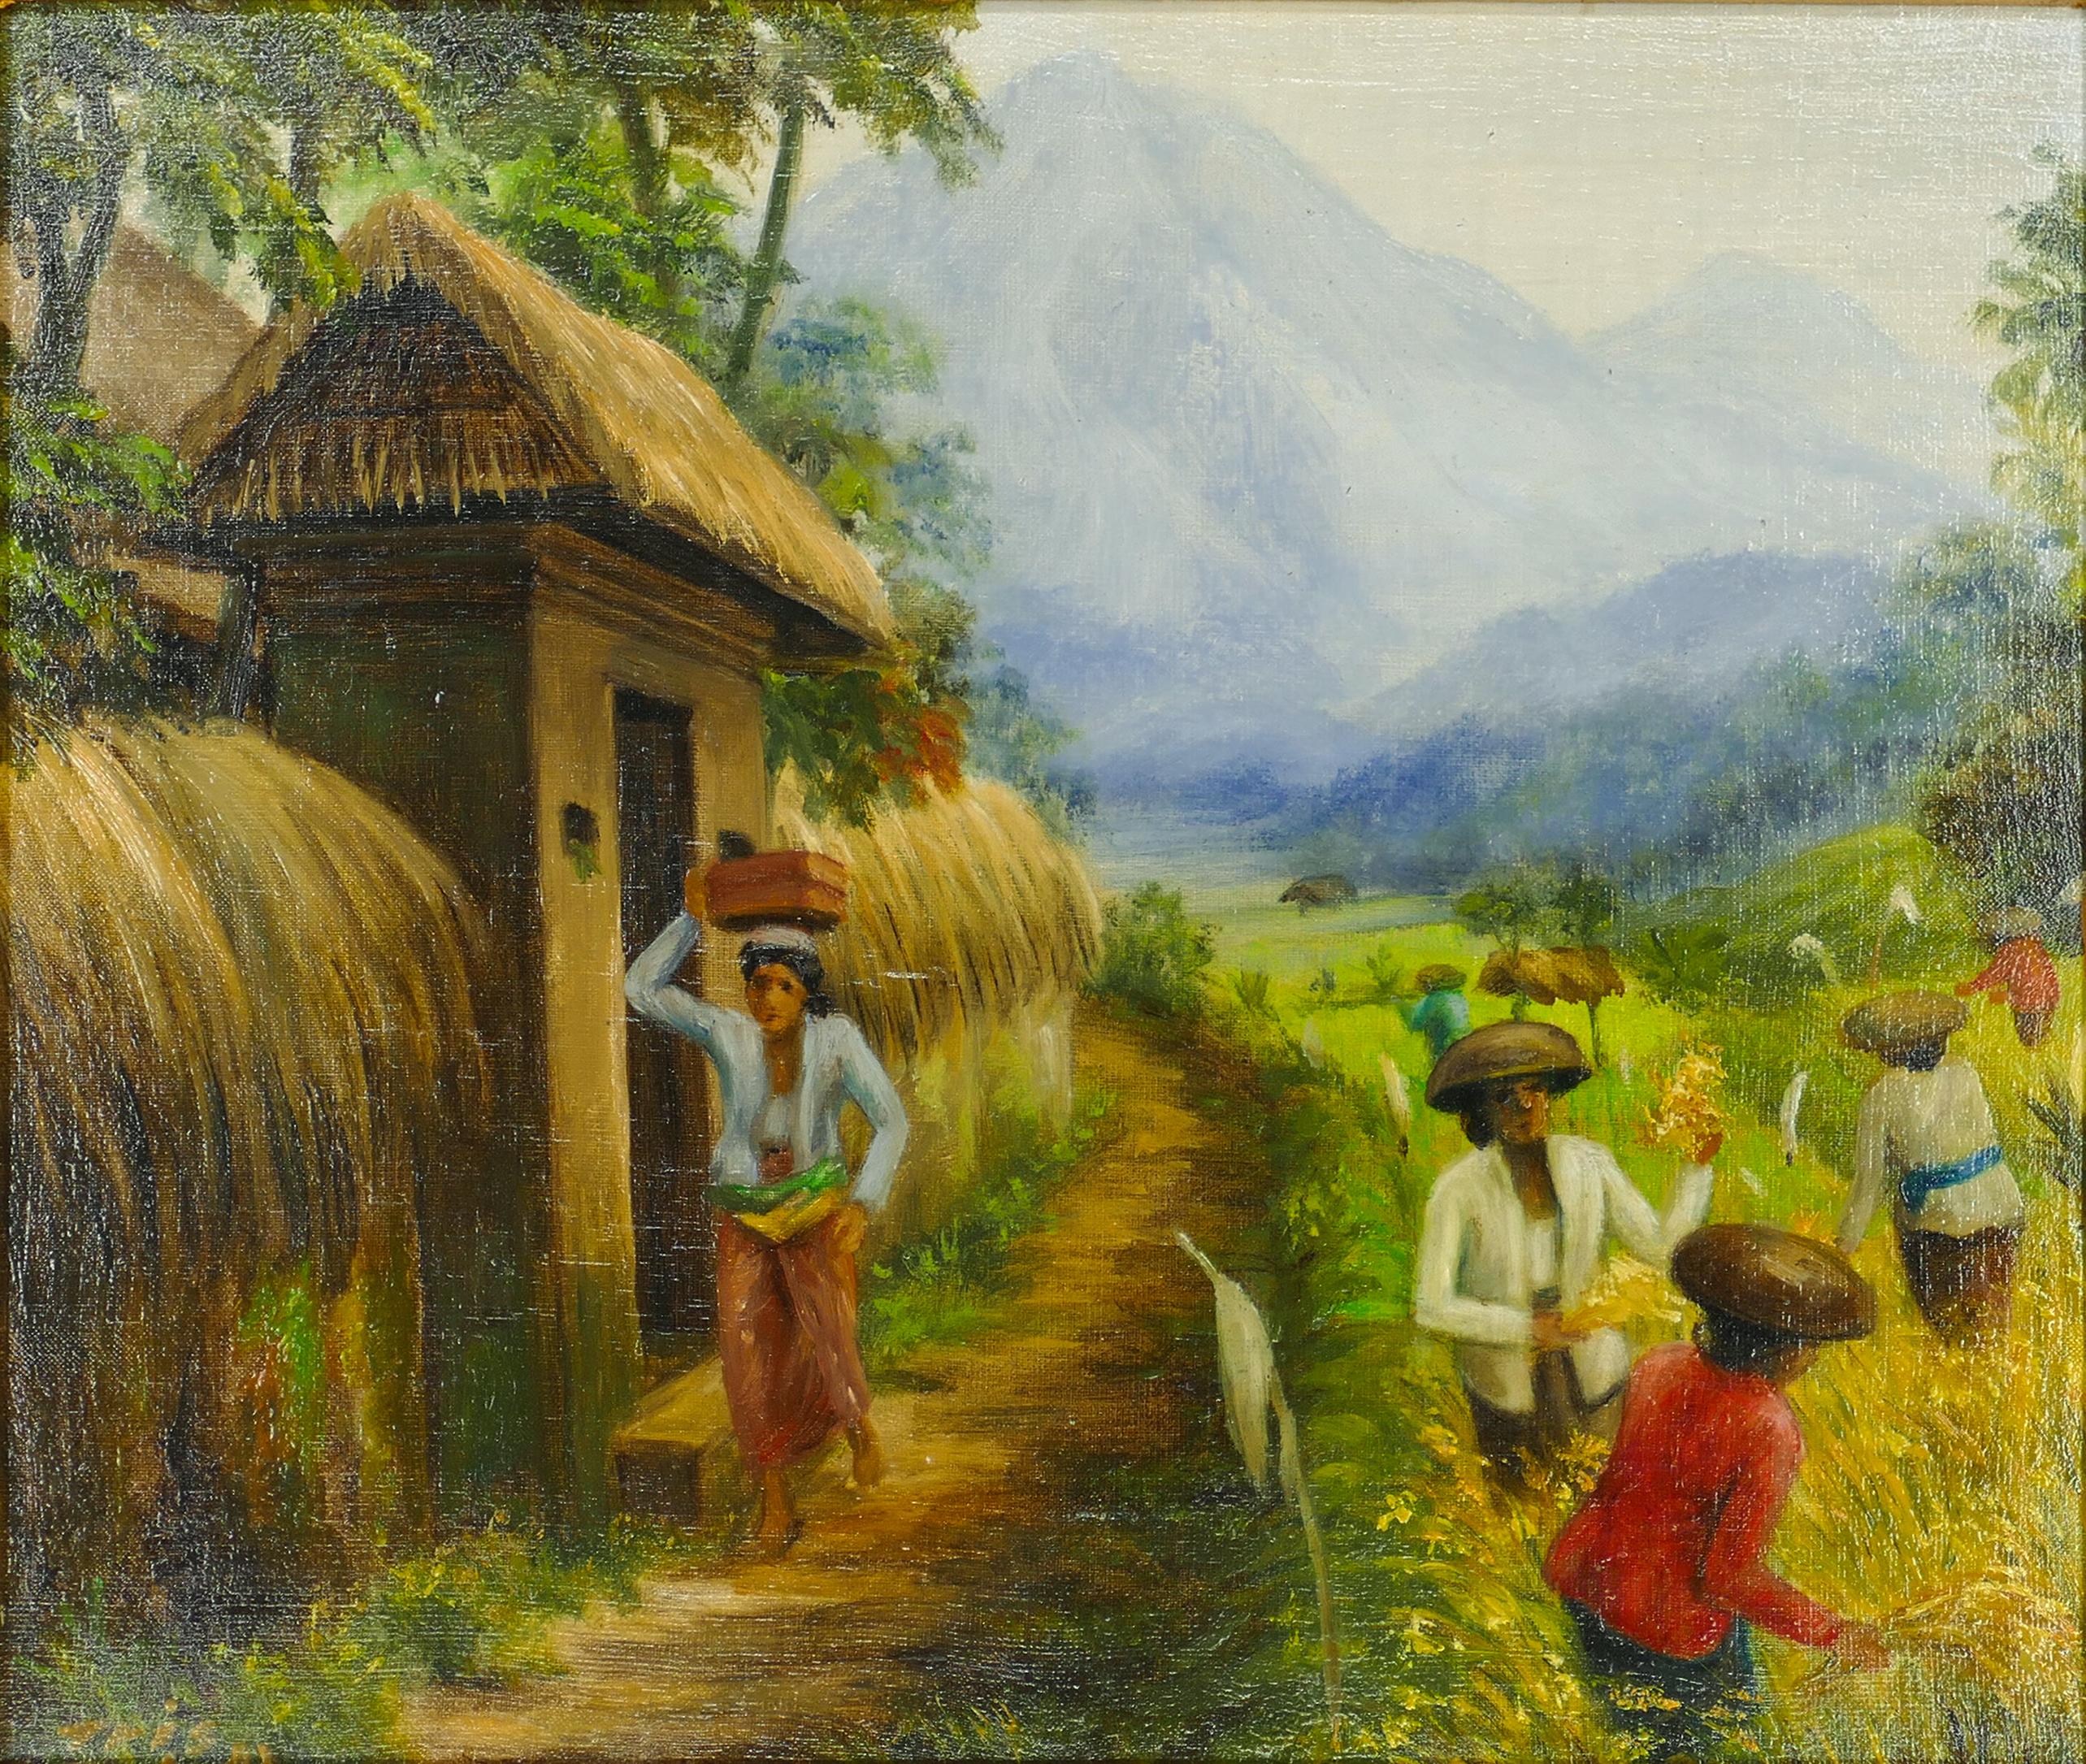 Figurative Painting Unknown - Rice Weeders at Work - Huile sur toile - École de Bali - Milieu du XXe siècle